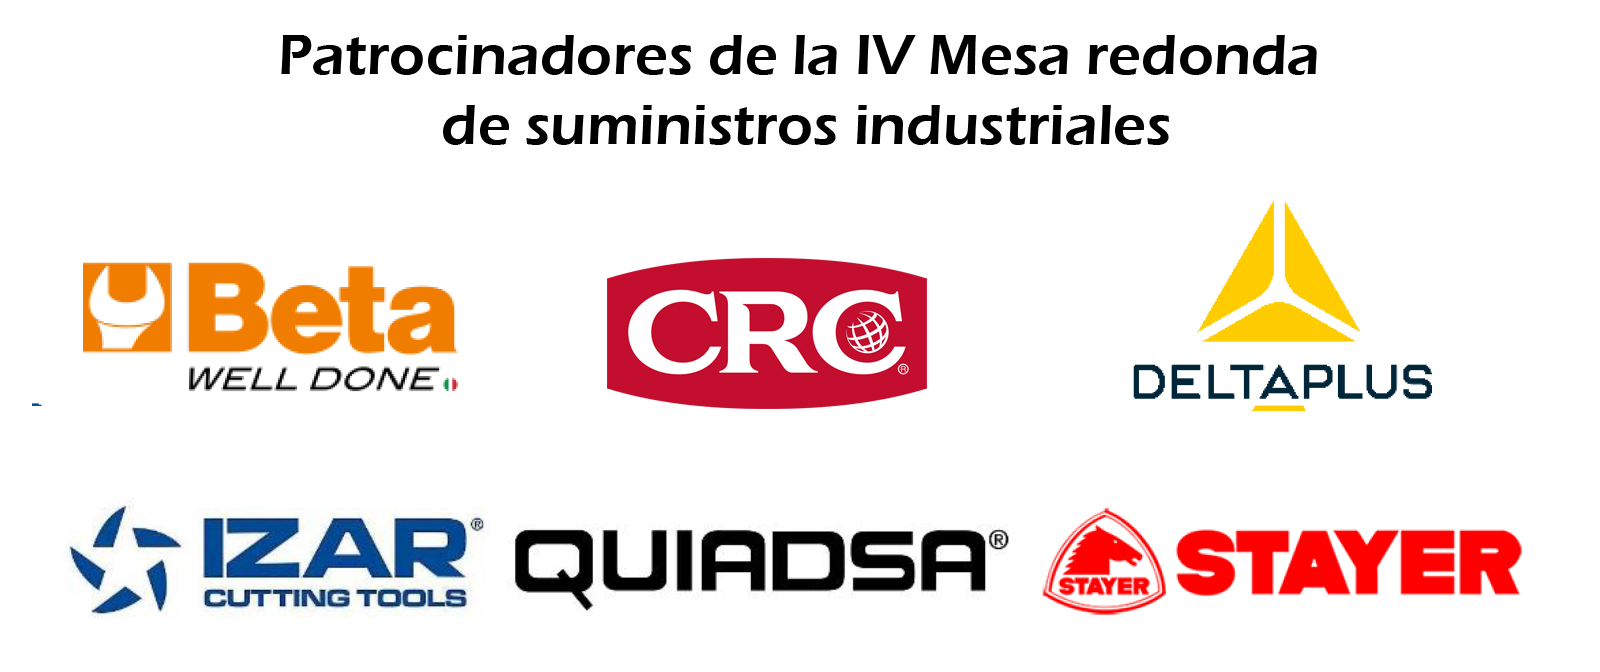 Beta, Izar, CRC, Quiadsa, Delta Plus y Stayer patrocinaron la IV Mesa redonda de suministros industriales